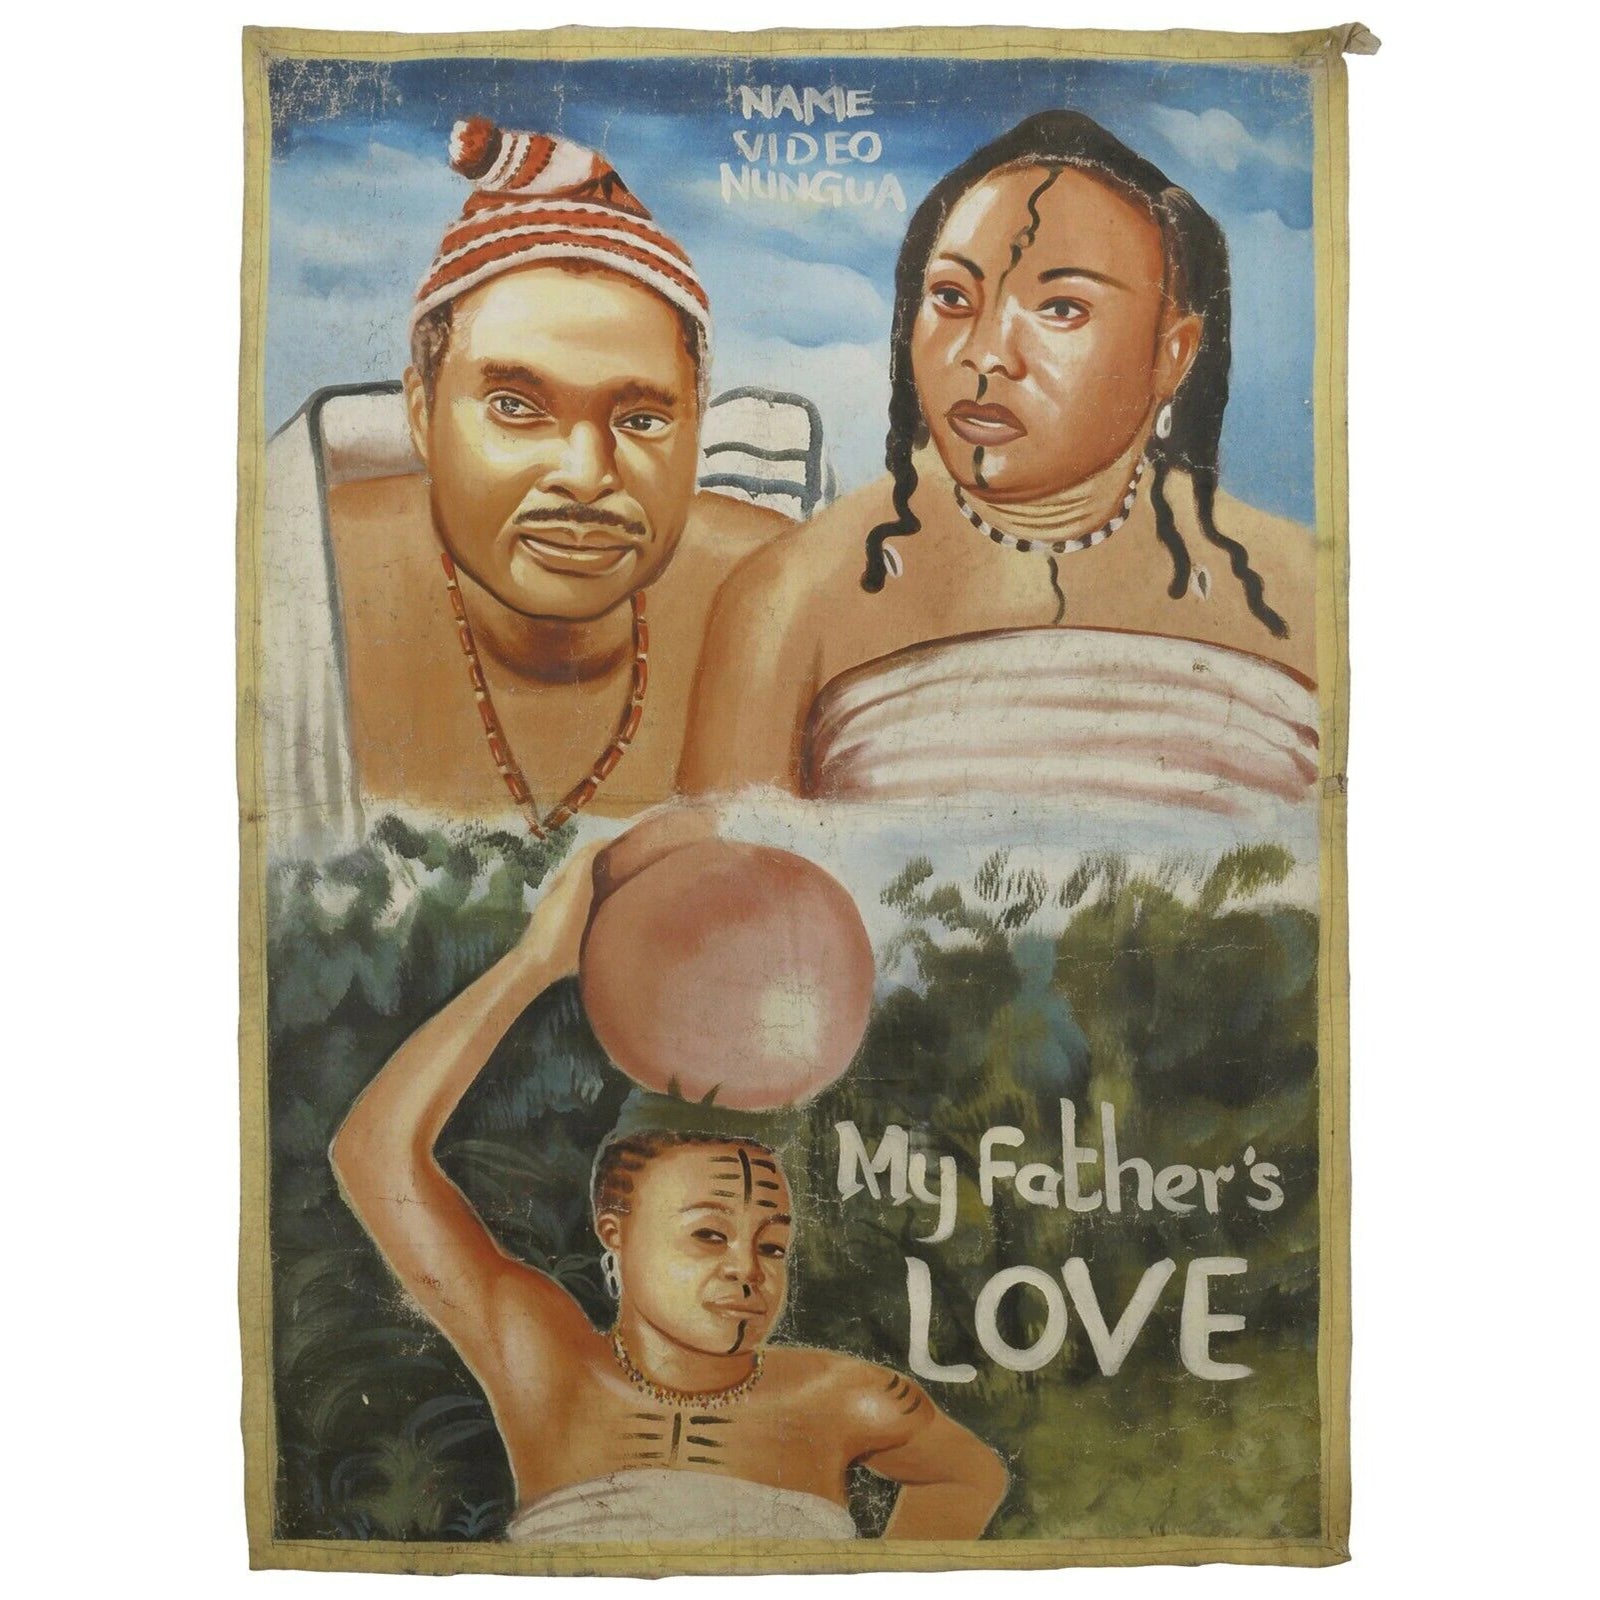 Αφίσα ταινίας της Γκάνα Αφρικανικός κινηματογράφος μπογιά χειρός ανακυκλωμένος σάκος αλευριού My Fathers Love - Tribalgh